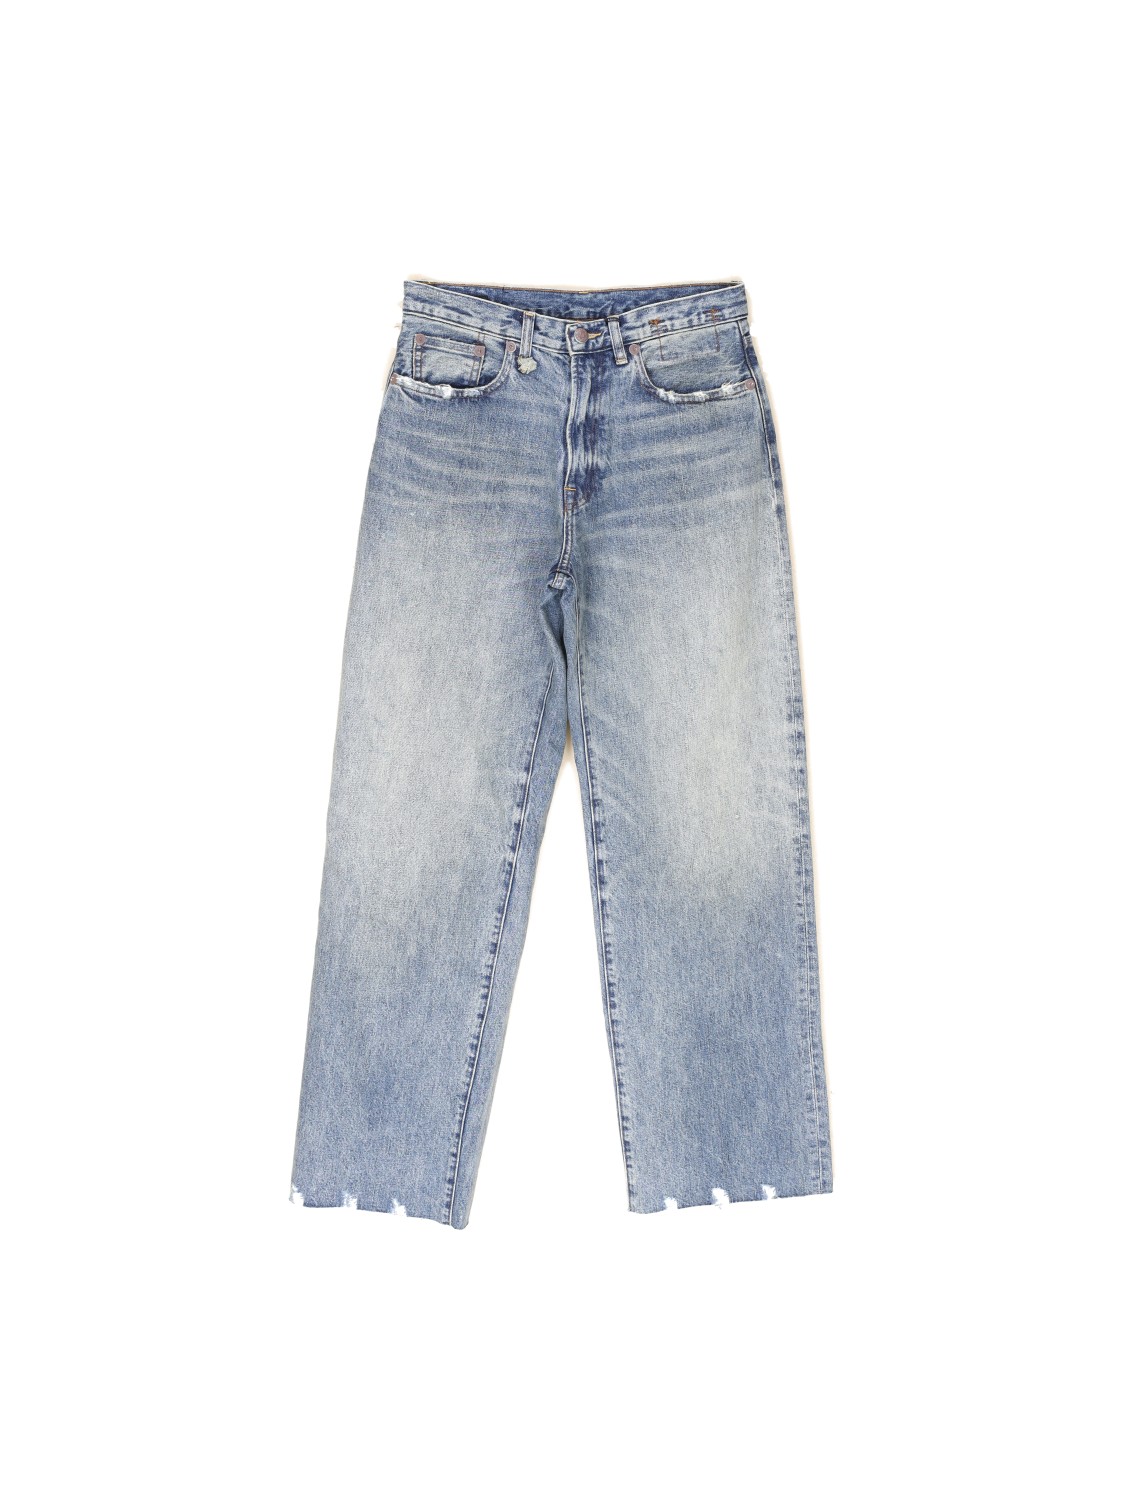 R13 Dárcy - Jeans boyfriend vintage avec effets délavés blau 25